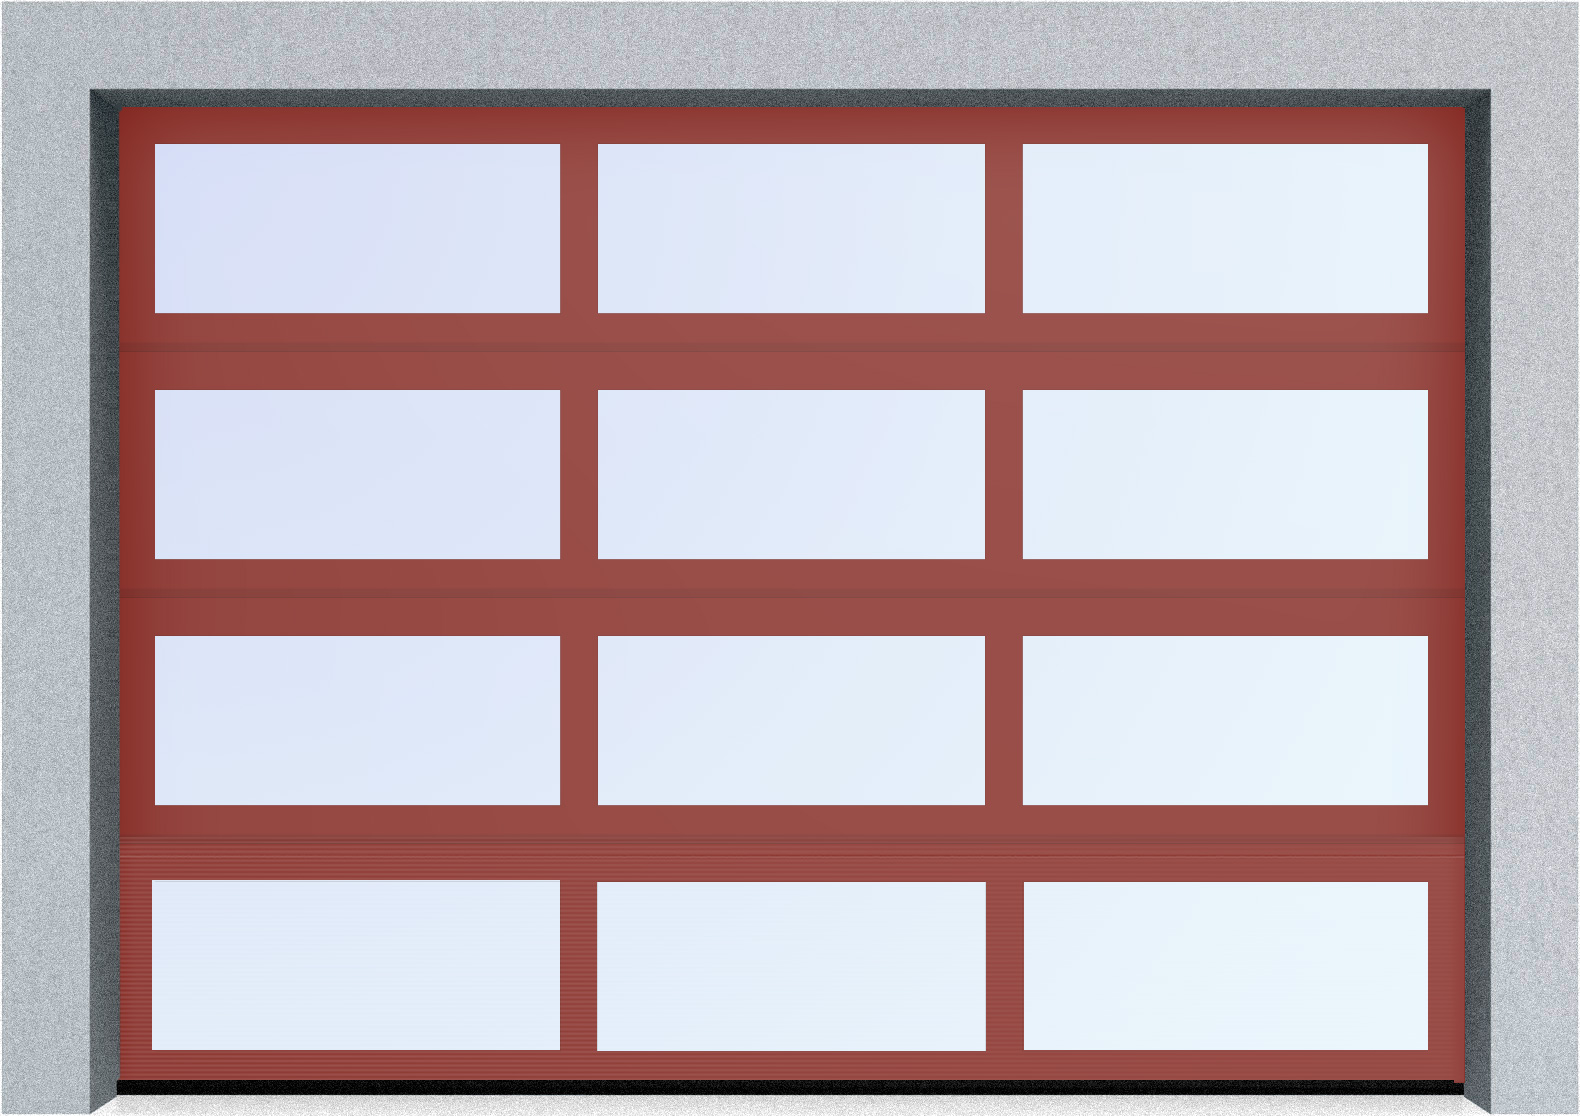  Секционные панорамные ворота серии AluTrend (АЛП) 2500х2500 нижняя панель стандартные цвета, фото 2 